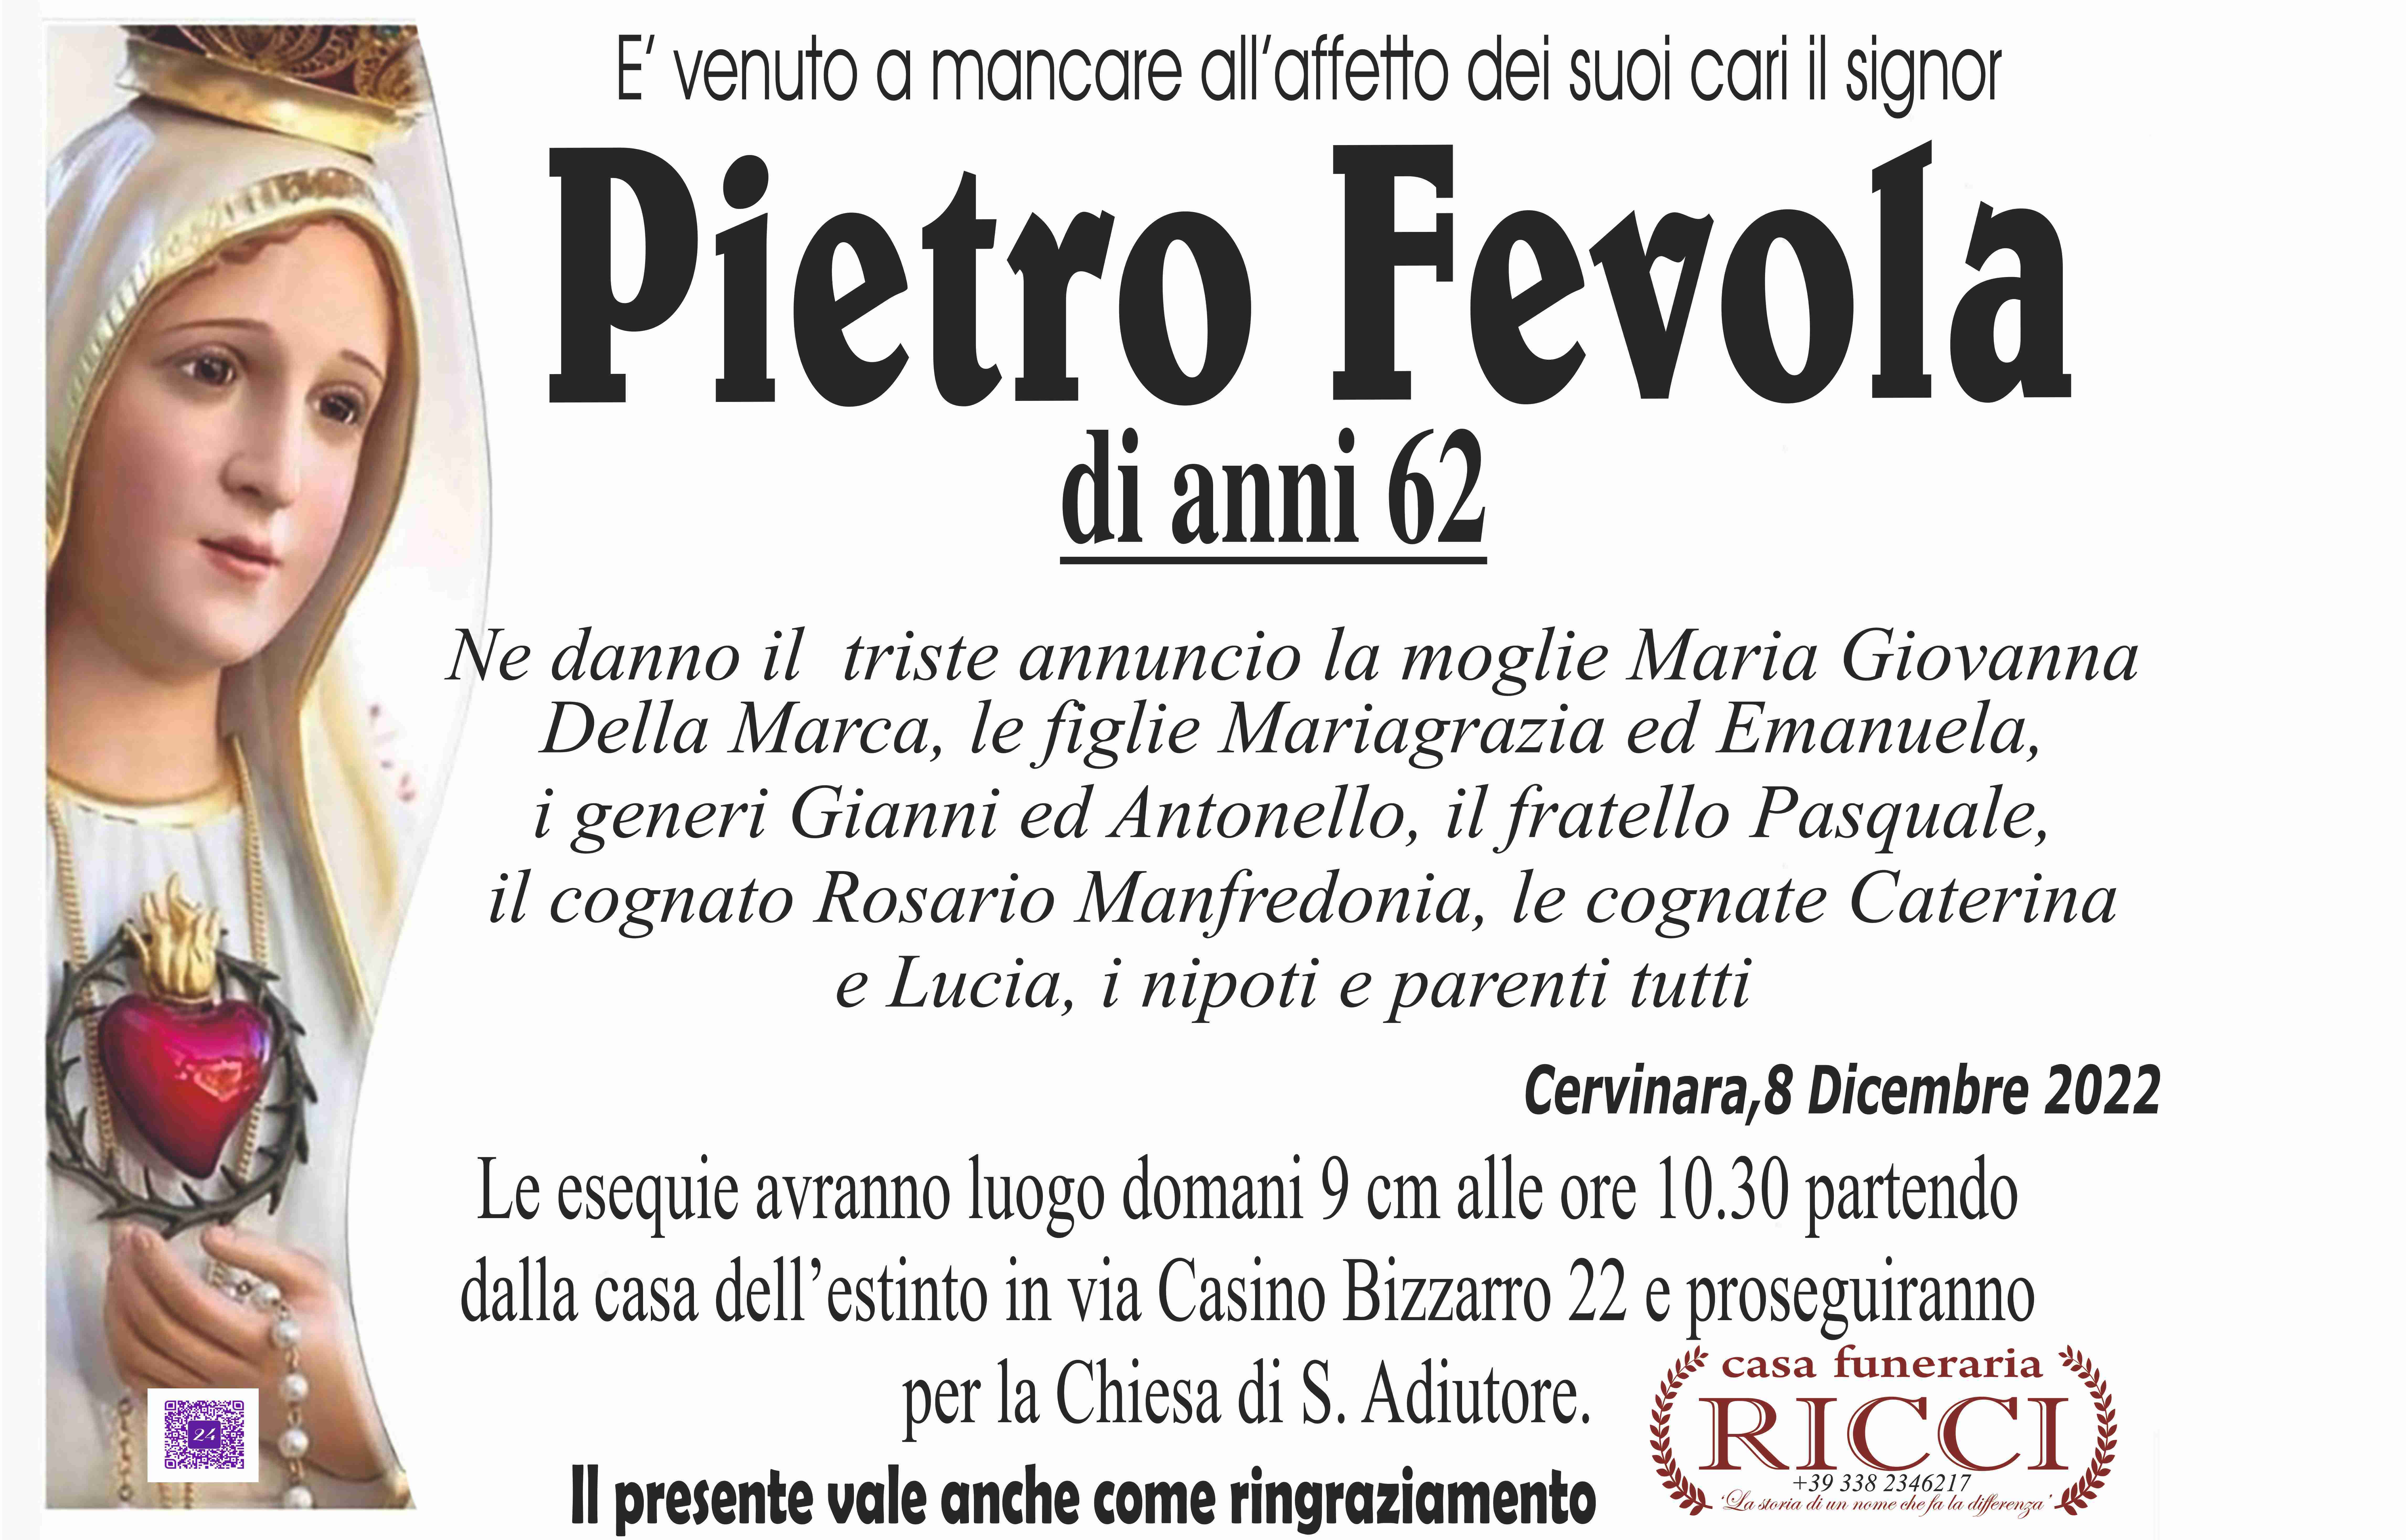 Pietro Fevola